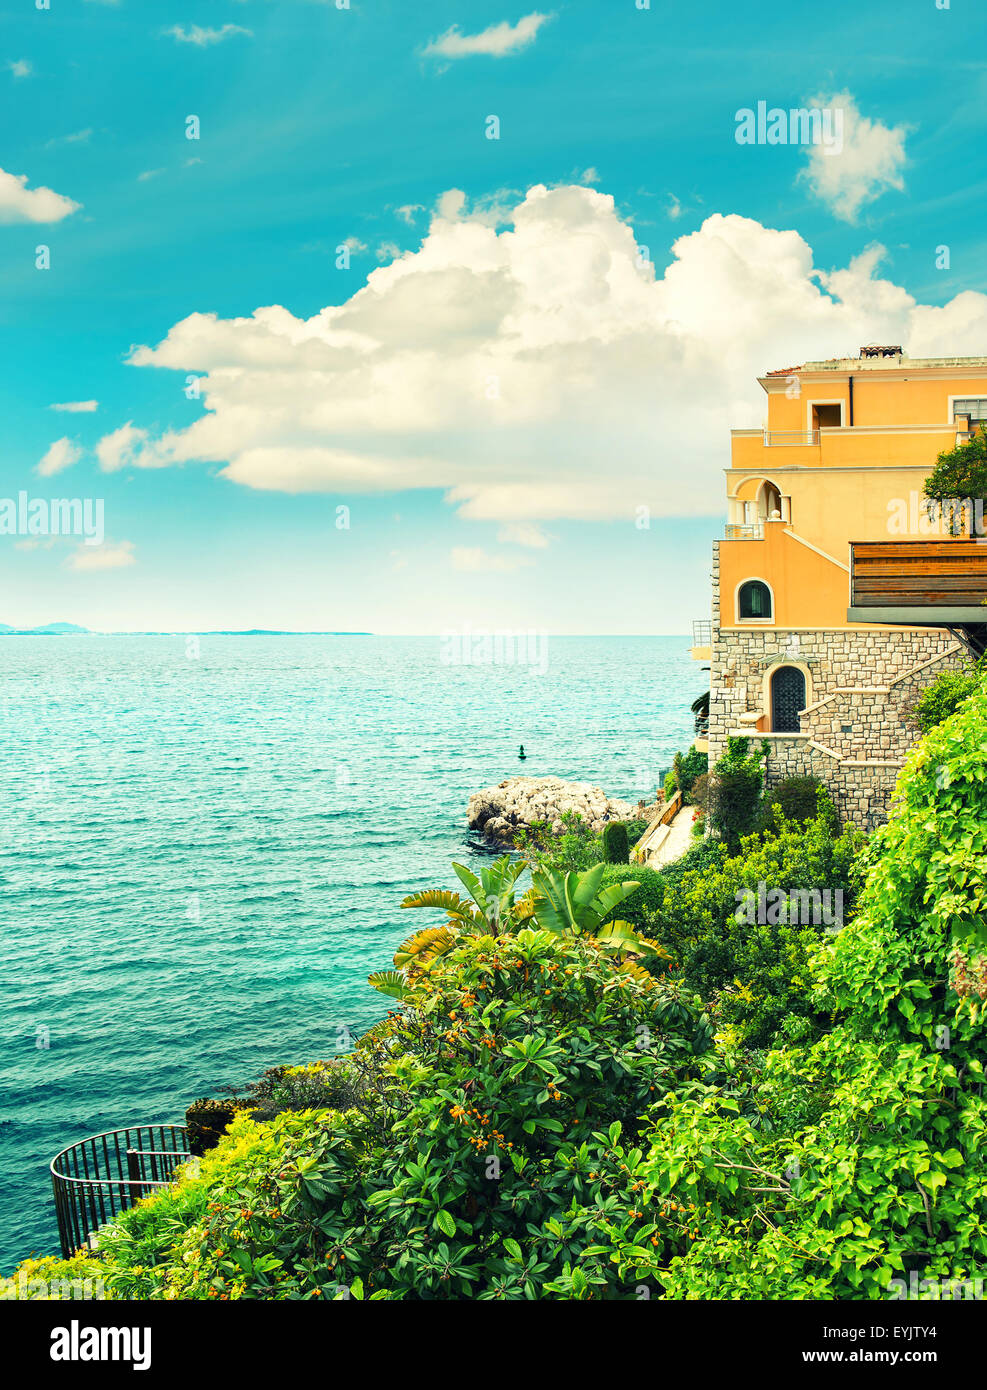 Türkisfarbenes Meer und blauer Himmel. Wunderschöne mediterrane Landschaft, Côte d ' Azur, Frankreich. Retro-Stil farbige Foto Stockfoto